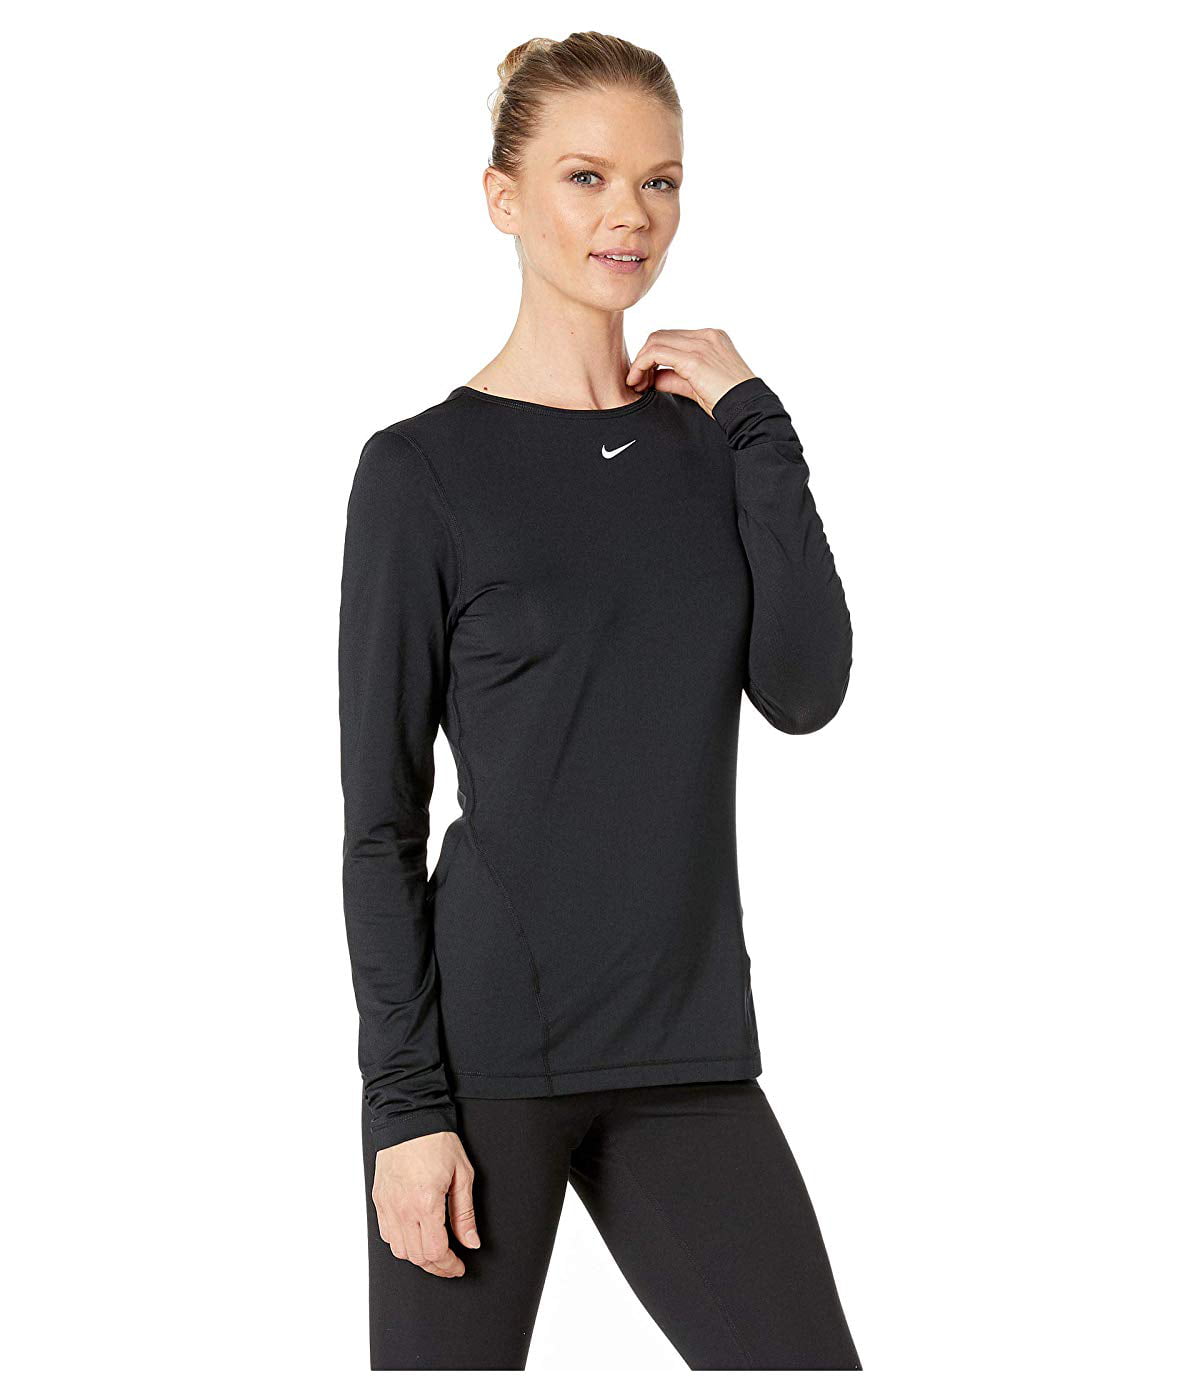 Og hold ovn Få Nike Women's Pro Mesh Long Sleeve Training Top - Walmart.com